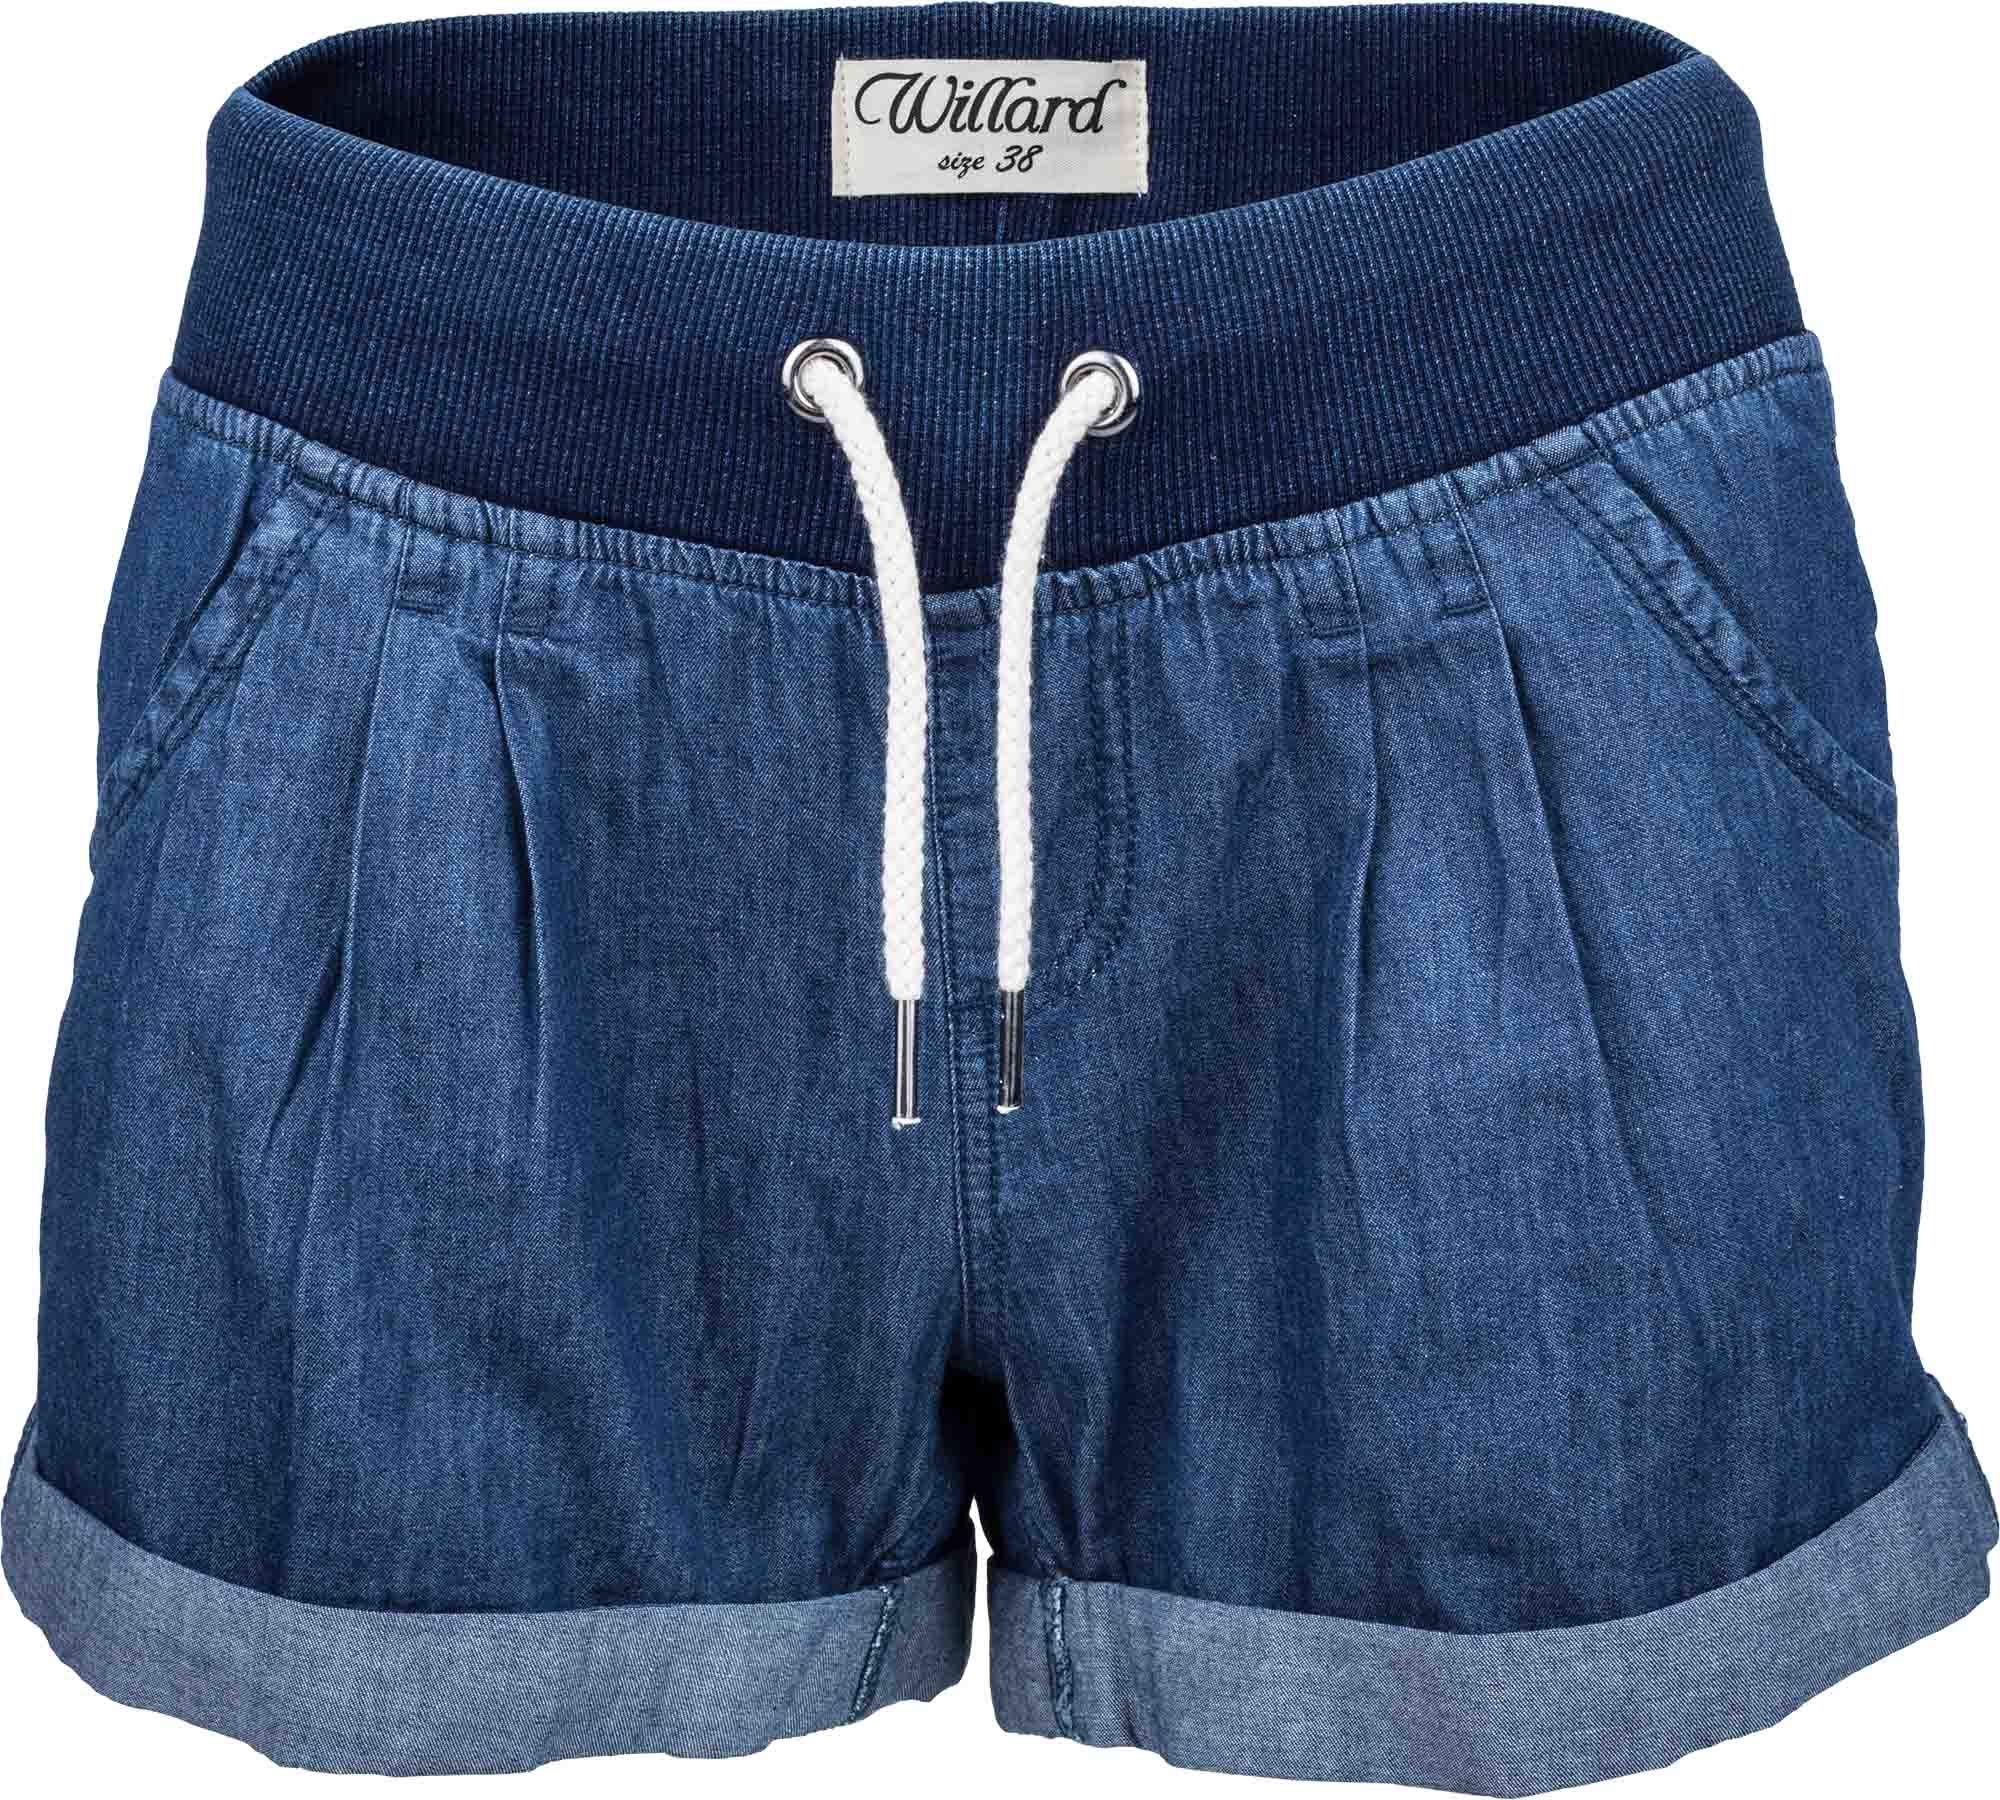 Women's jean shorts